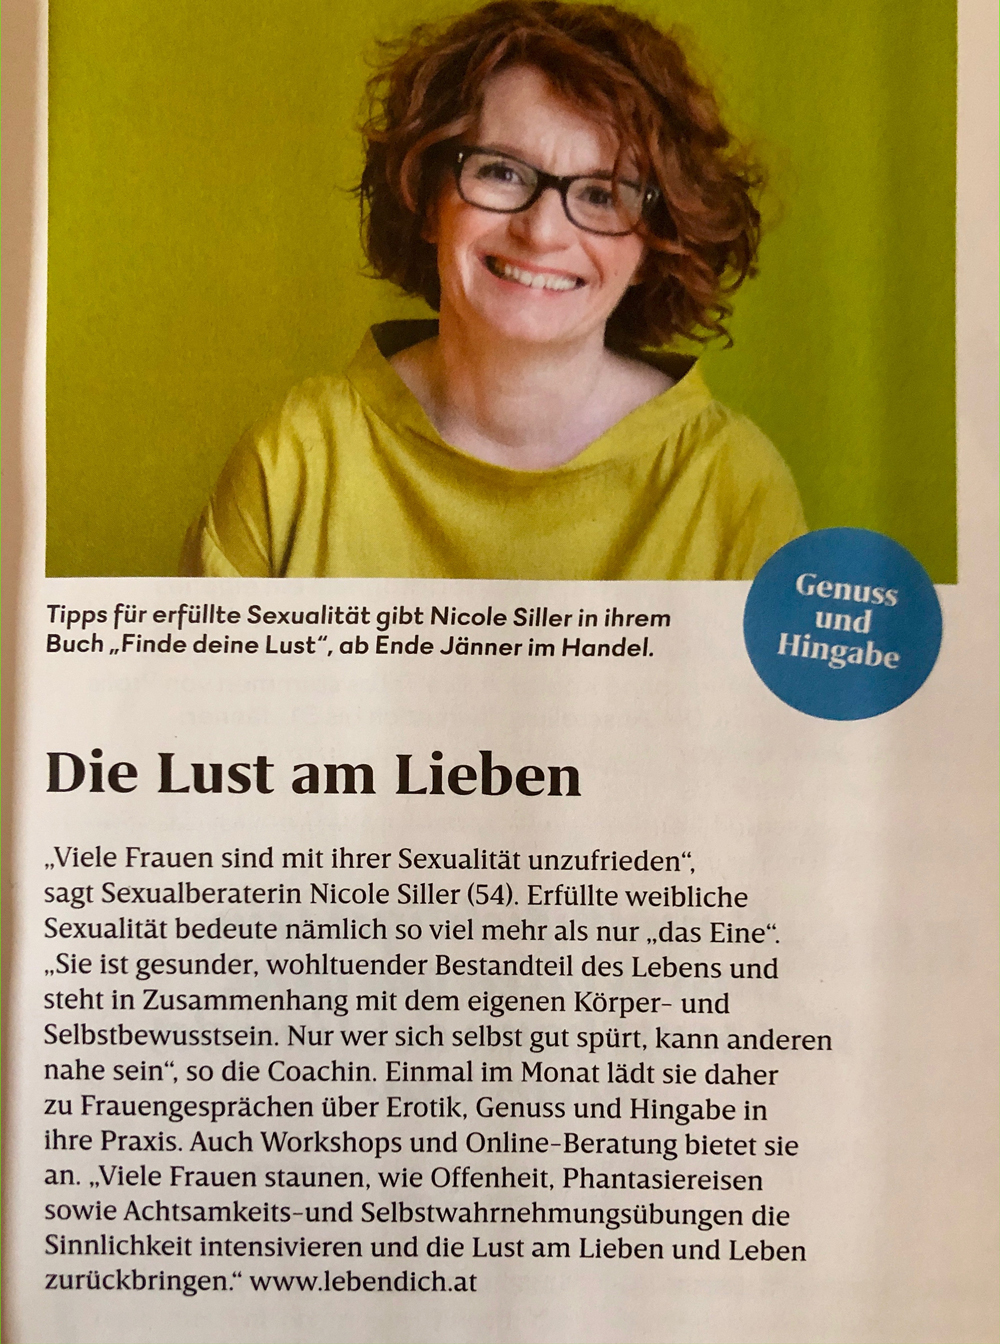 Nicole Siller, lebendich "Die Lust am Lieben" Welt der Frauen 01-02/2019